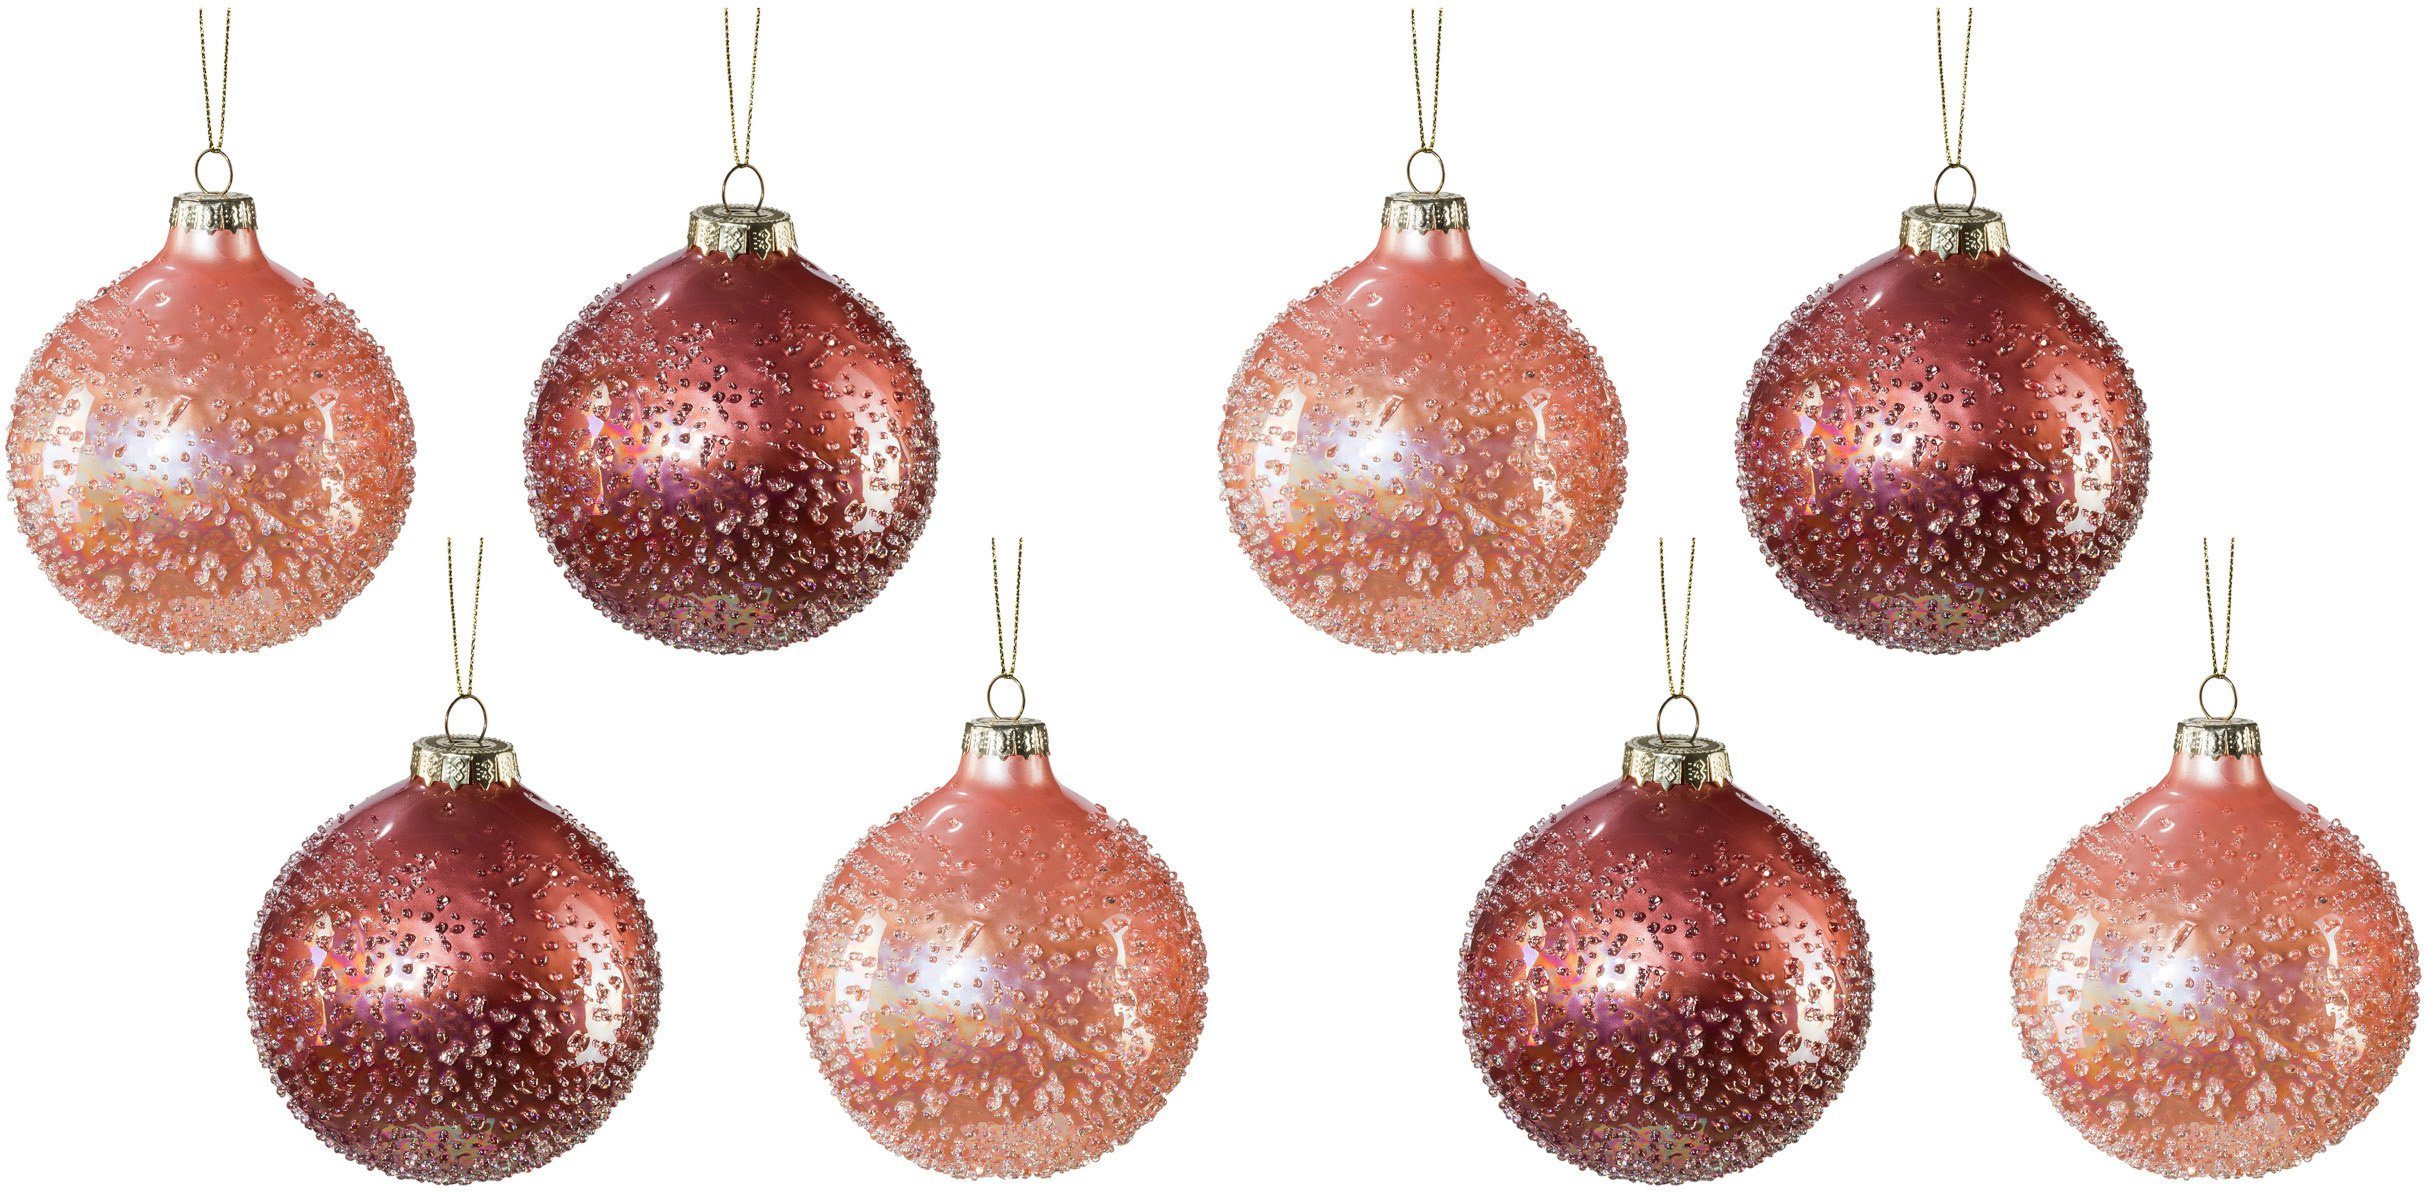 Creativ deco Weihnachtsbaumkugel Weihnachtsdeko, Christbaumschmuck, Christbaumkugeln  Glas (8 St), mit Perl-Optik, Traumhaft schöne Weihnachtsbaumkugeln